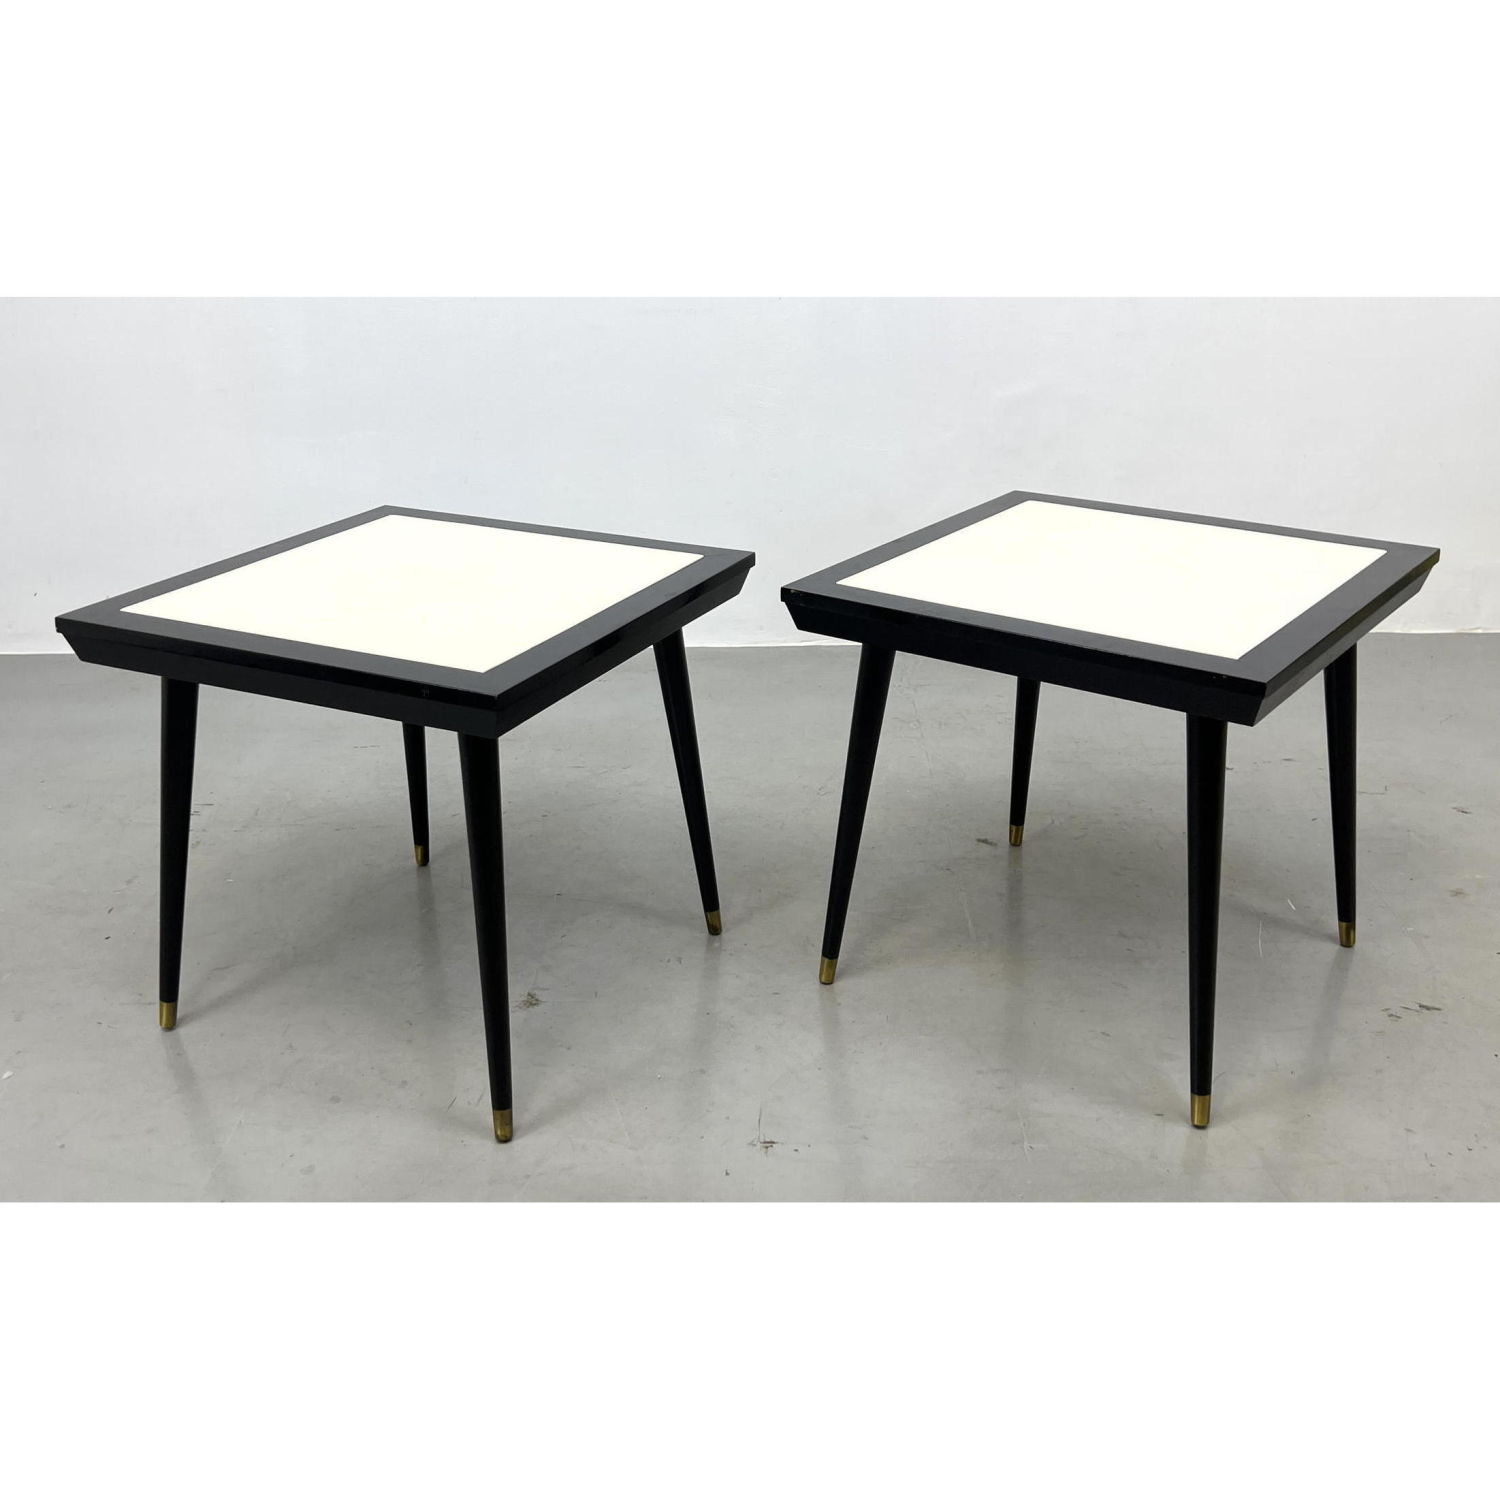 Pr Ebonized Side Tables White 2b88a7